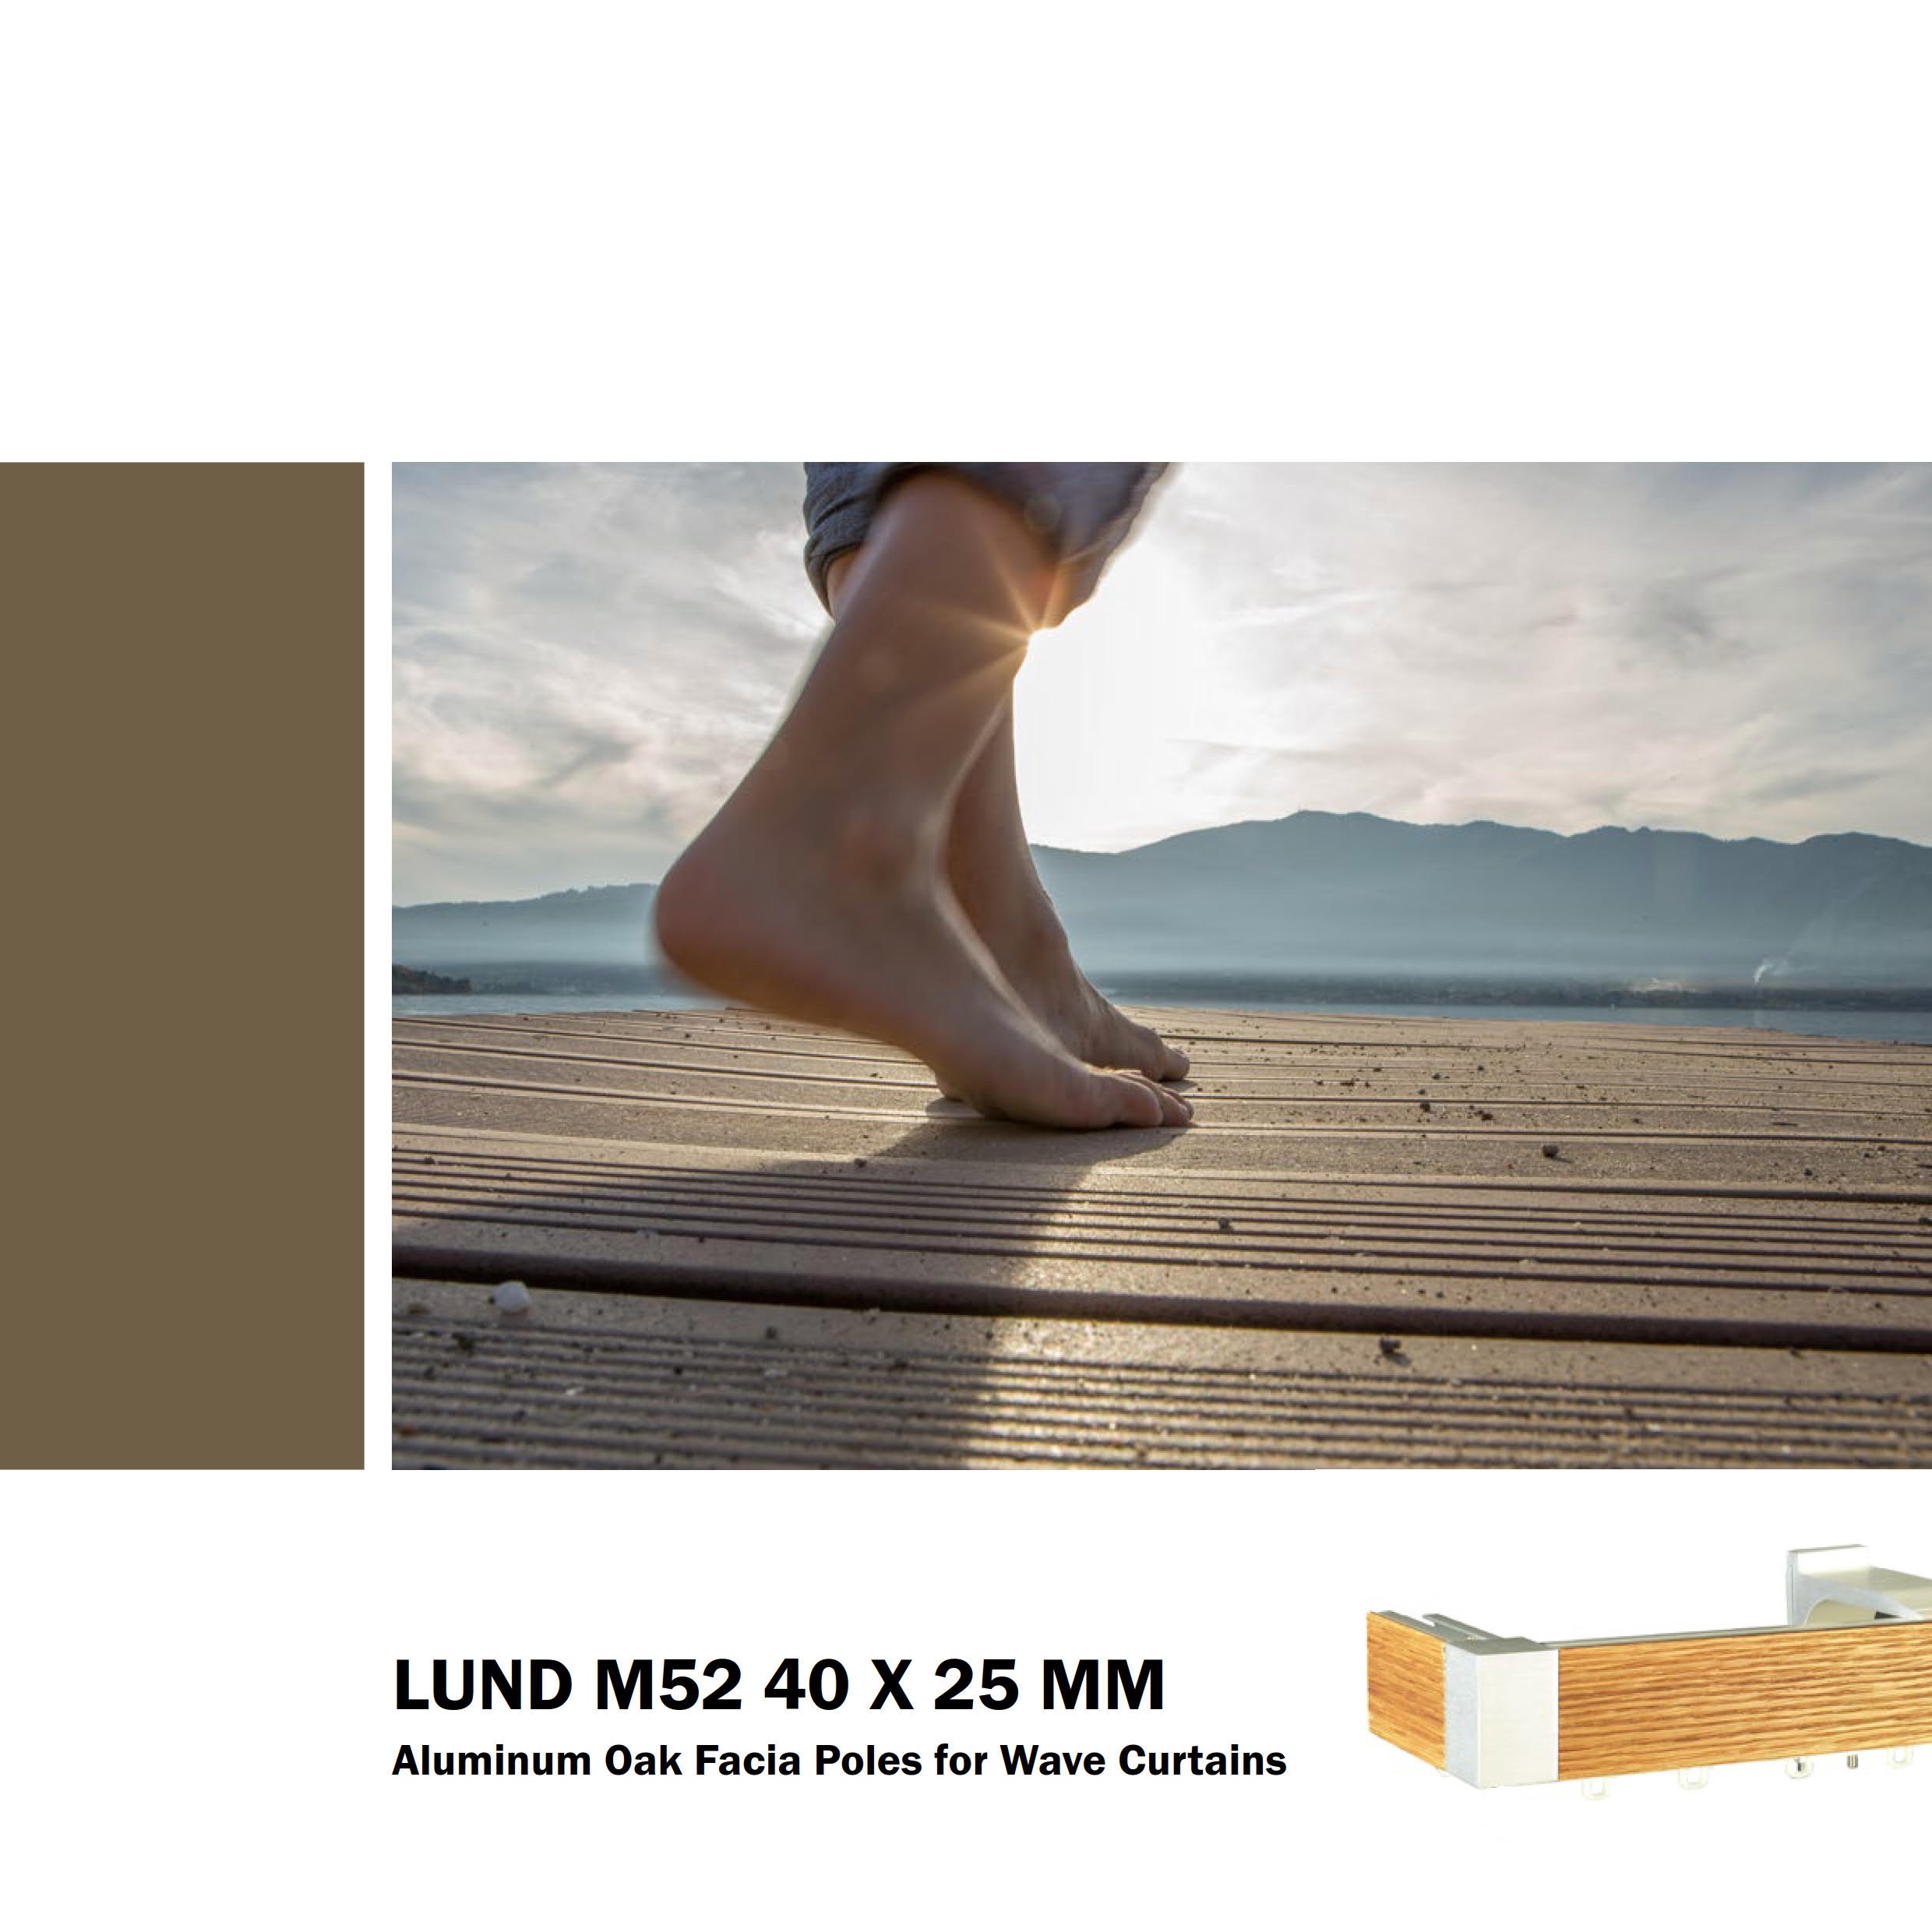 Lund M52 40 x 25mm